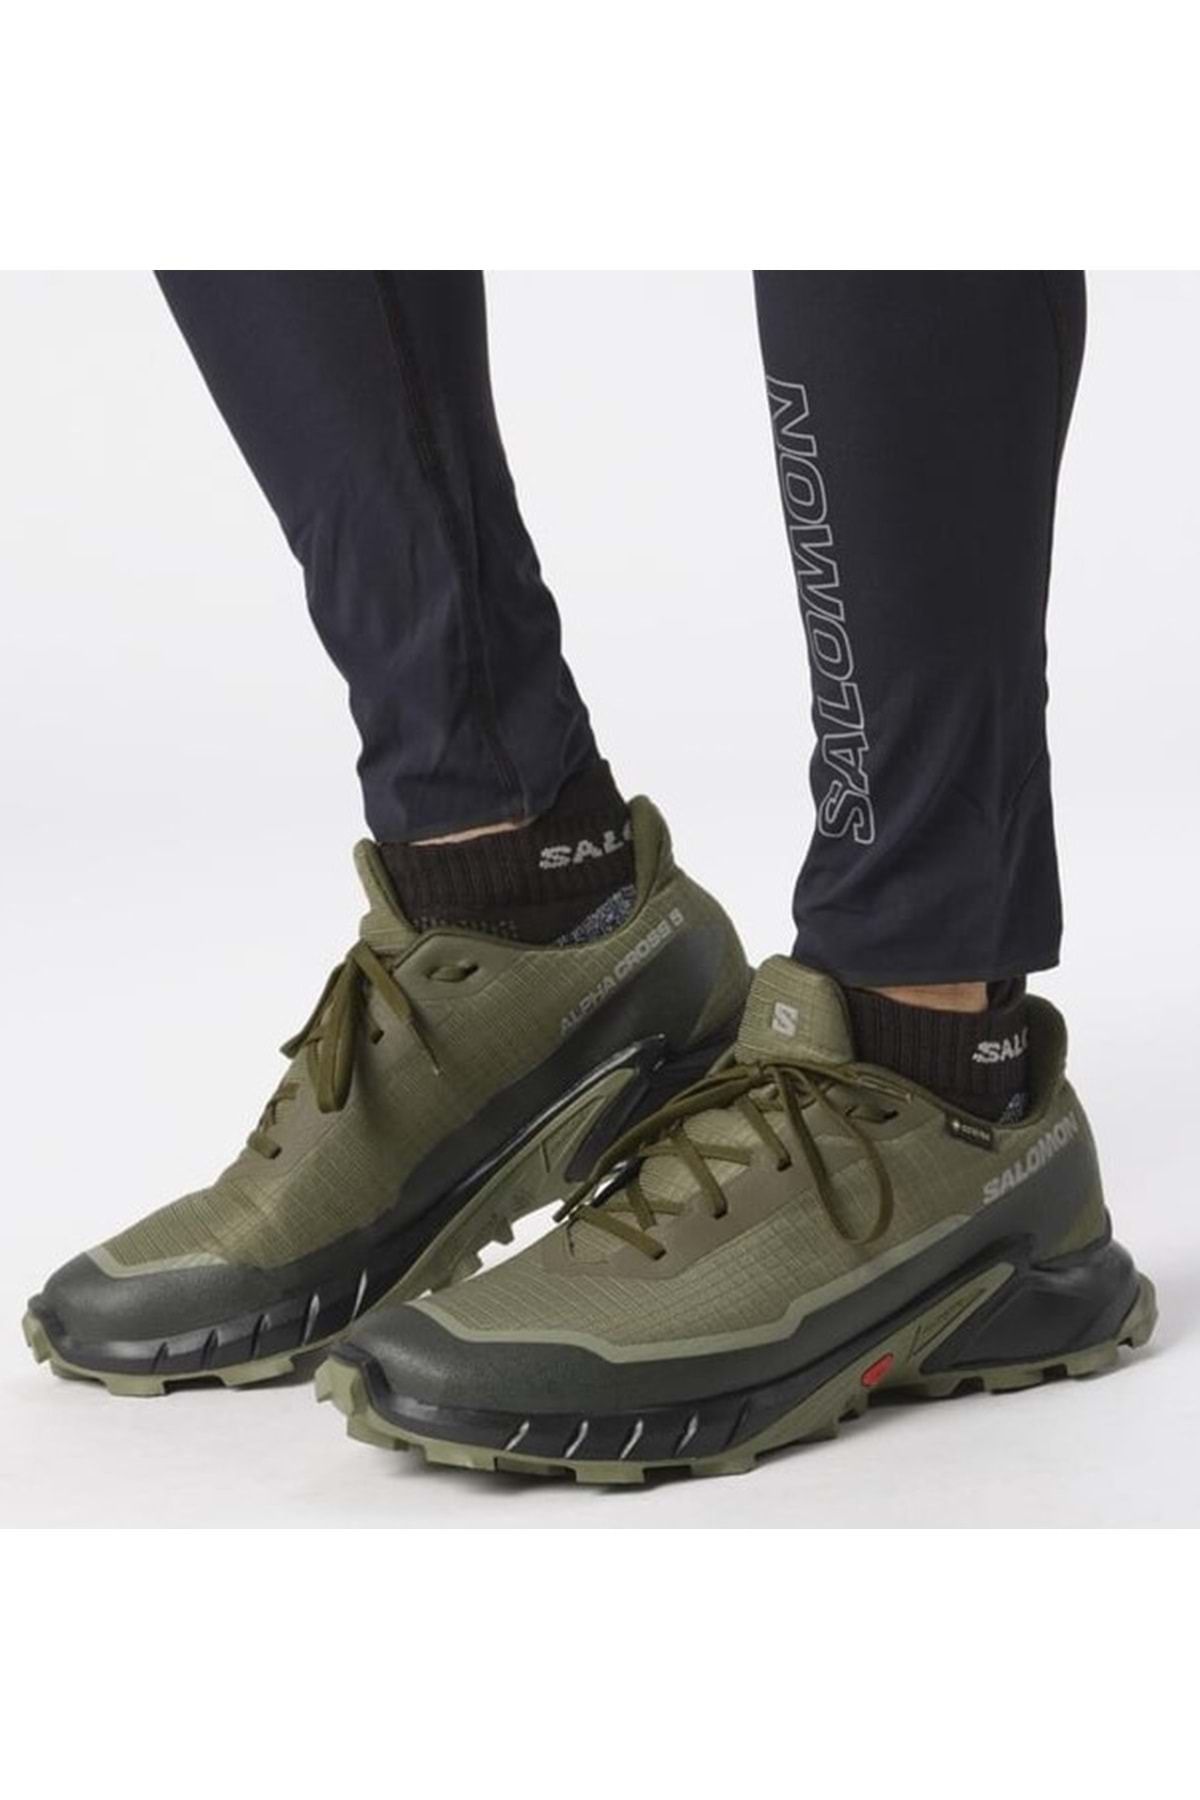 Salomon Alphacross 5 Gtx Gore-Tex® L47310300 Outdoor Erkek Patika Koşu Ayakkabısı HAKİ